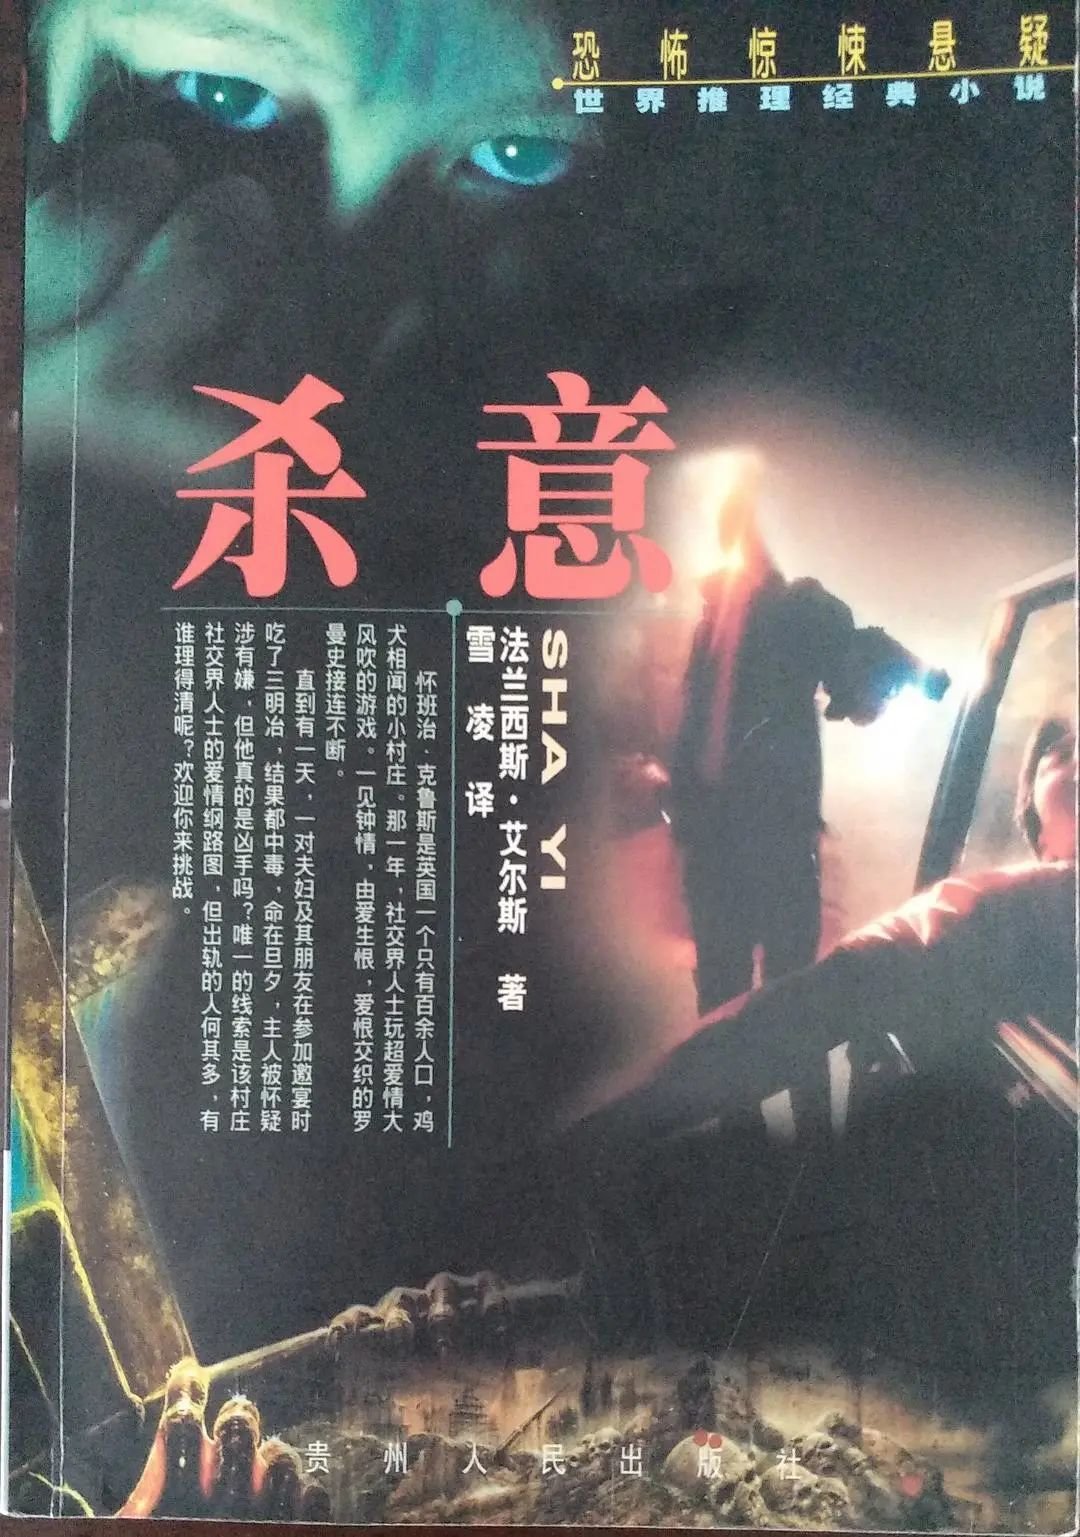 《杀意》，艾尔斯著，贵州人民出版社2000年。